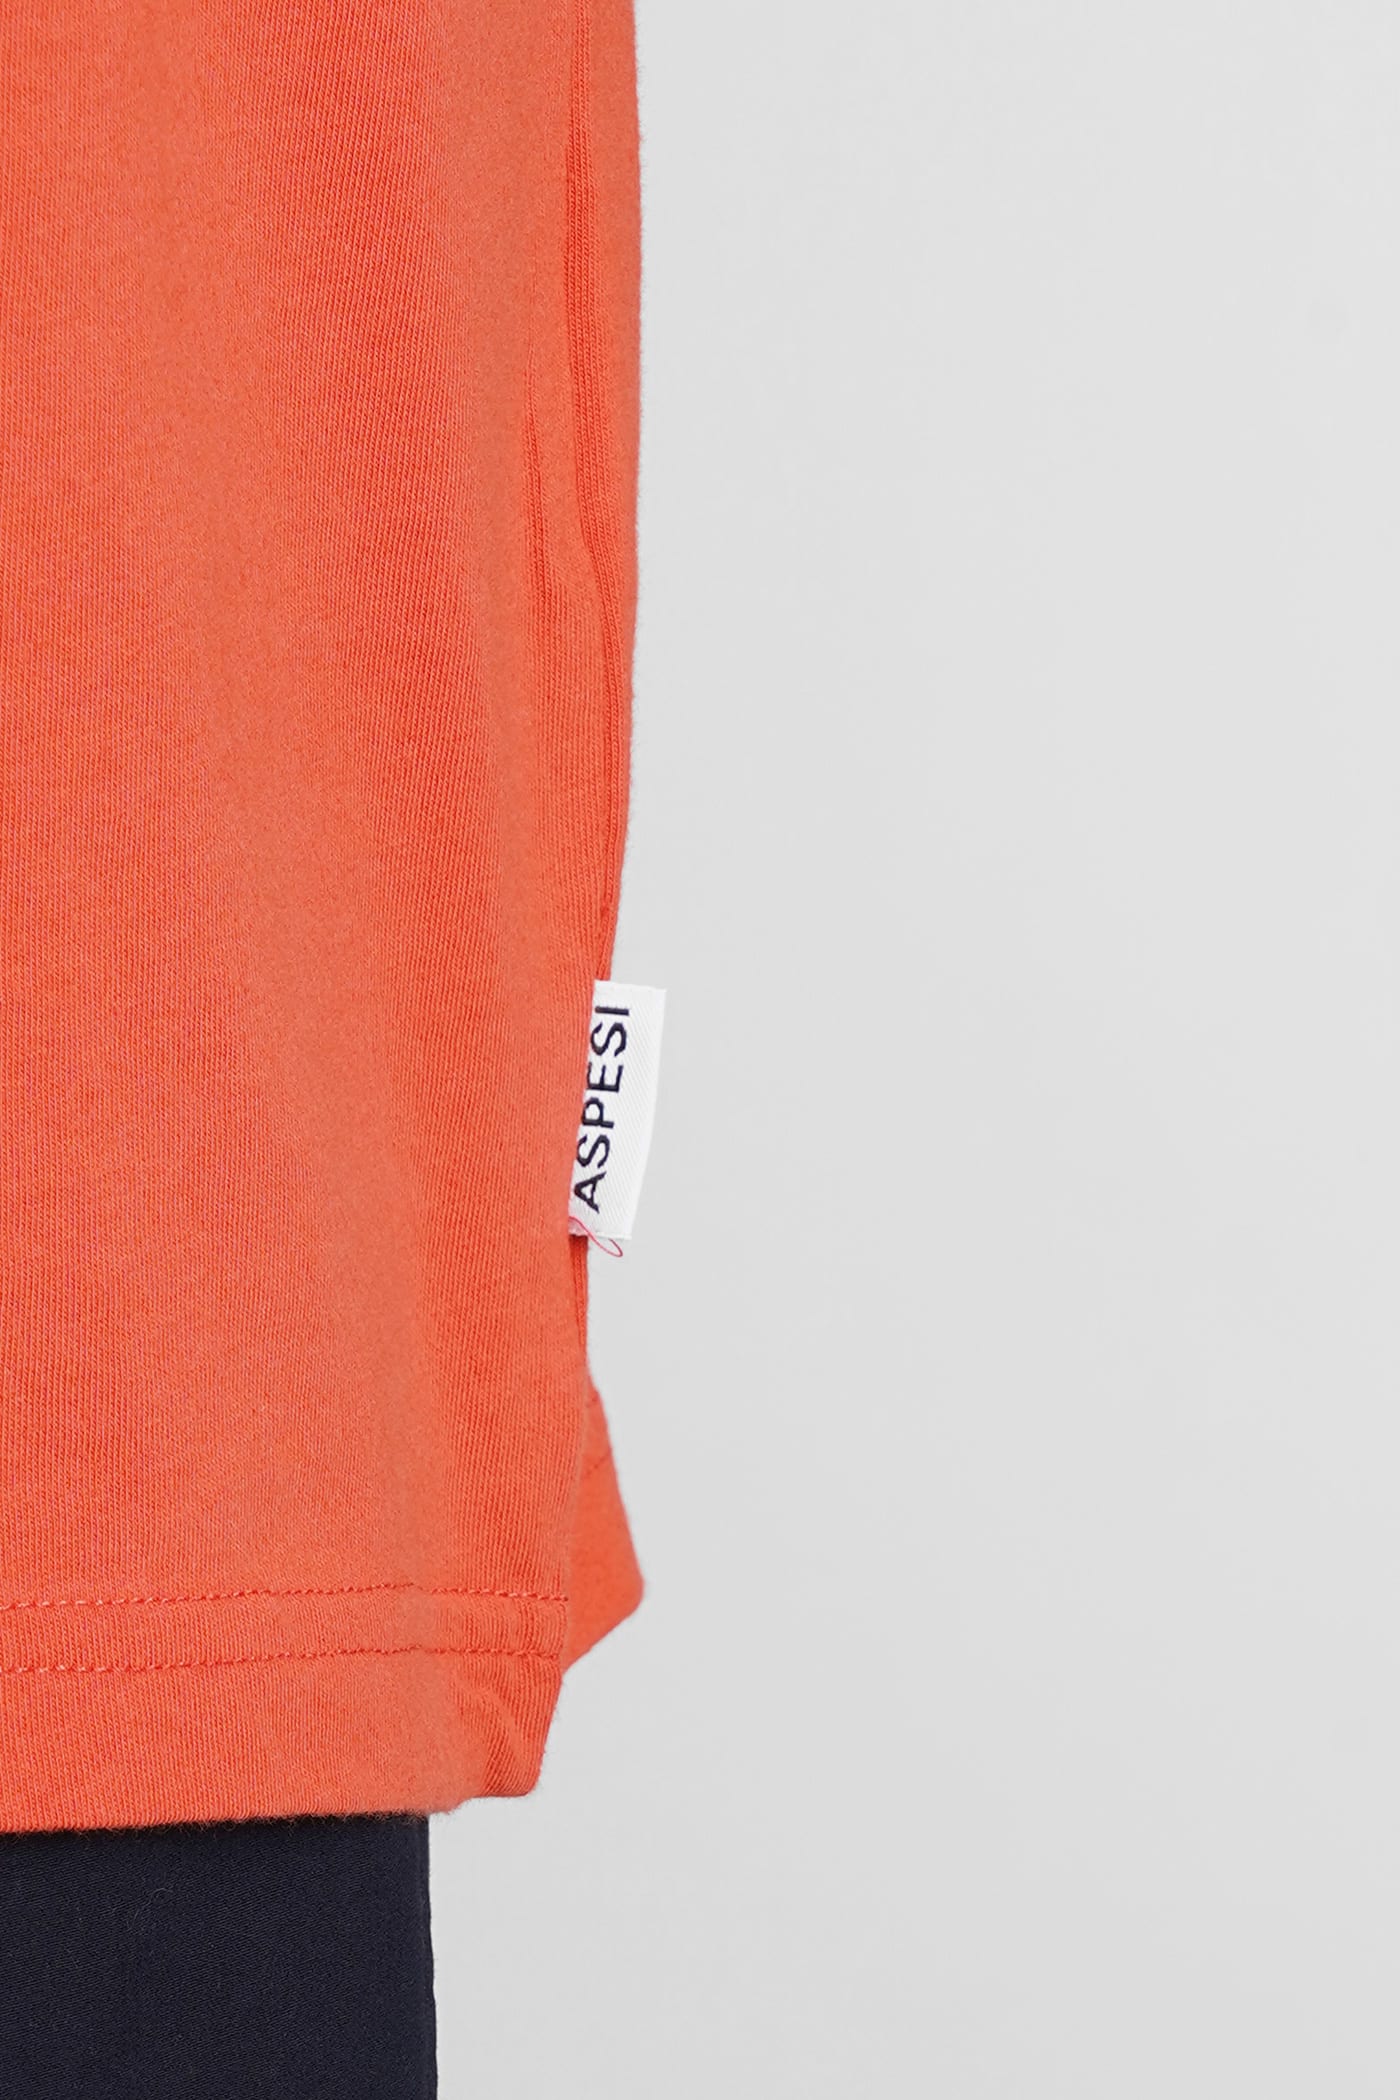 Shop Aspesi Silenzio T-shirt In Orange Cotton